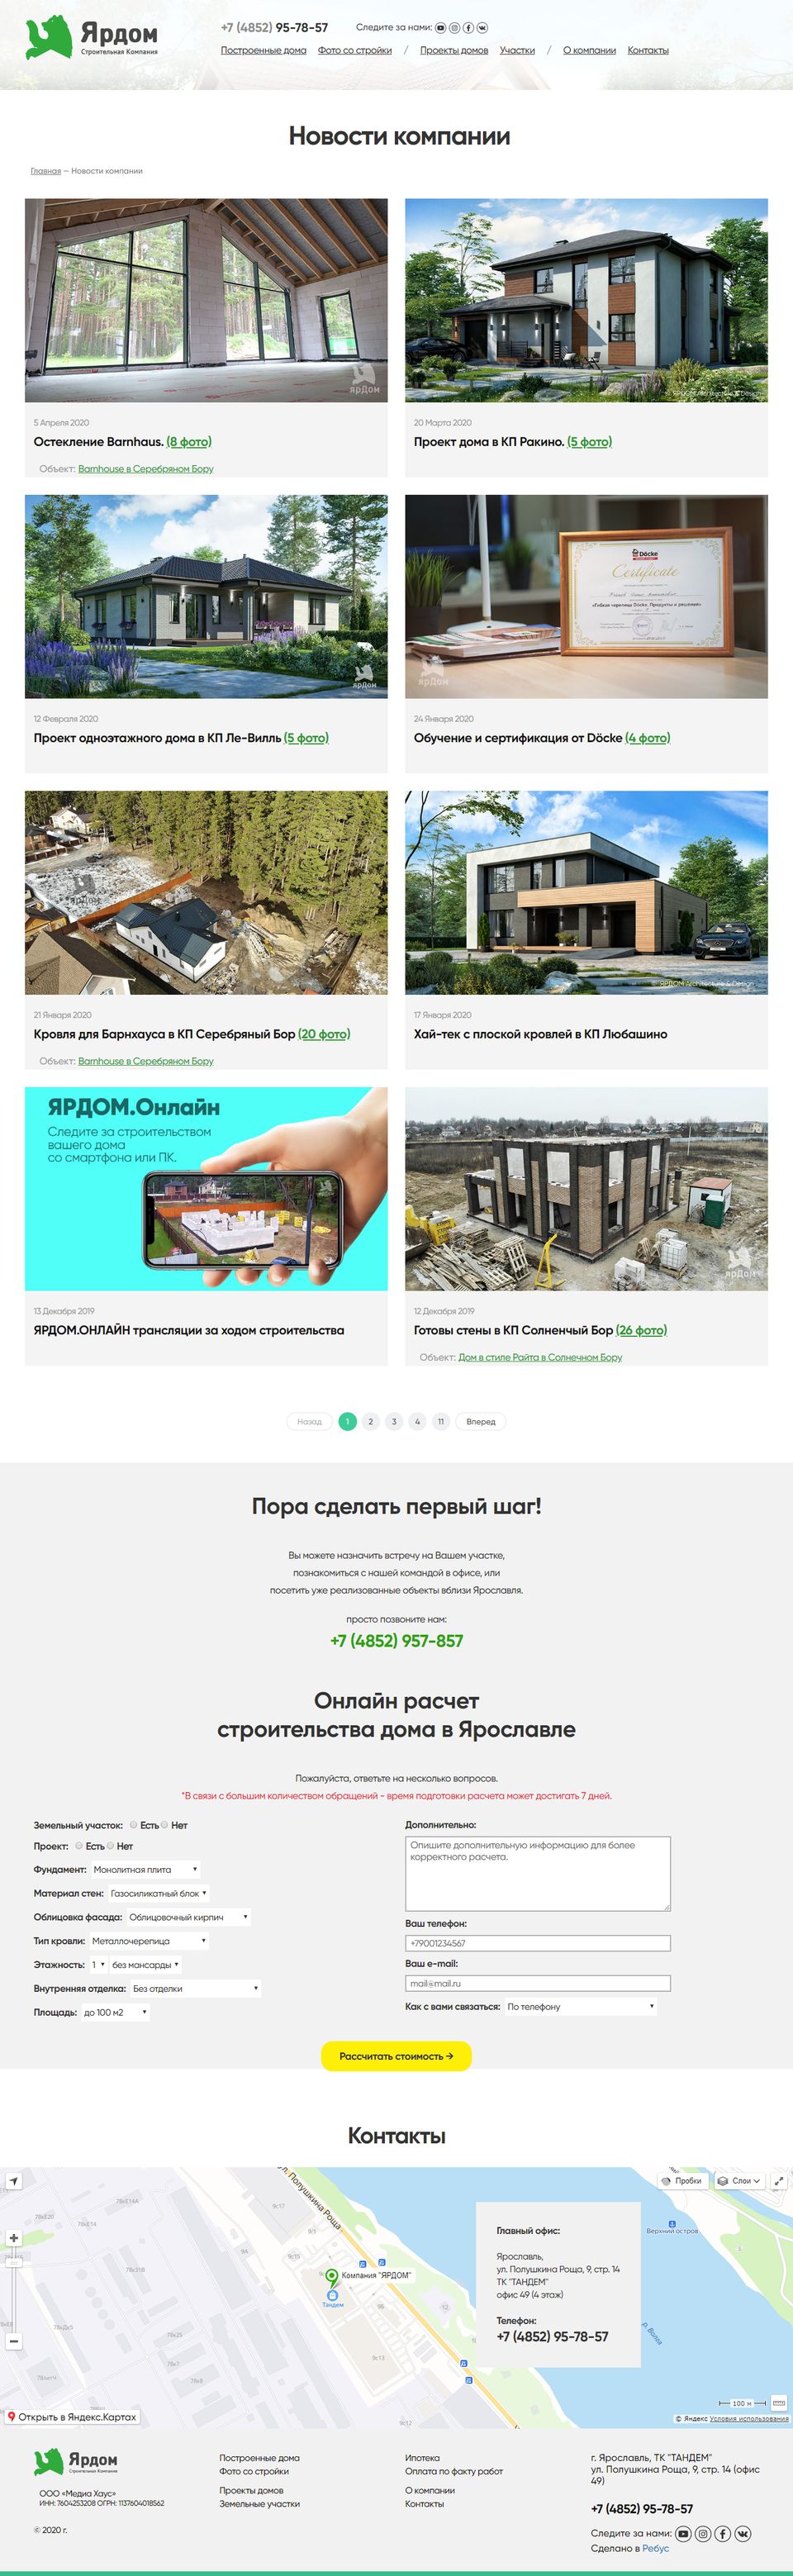 Создание сайта для строительной компании Ярдом - Страница "Новости компании"